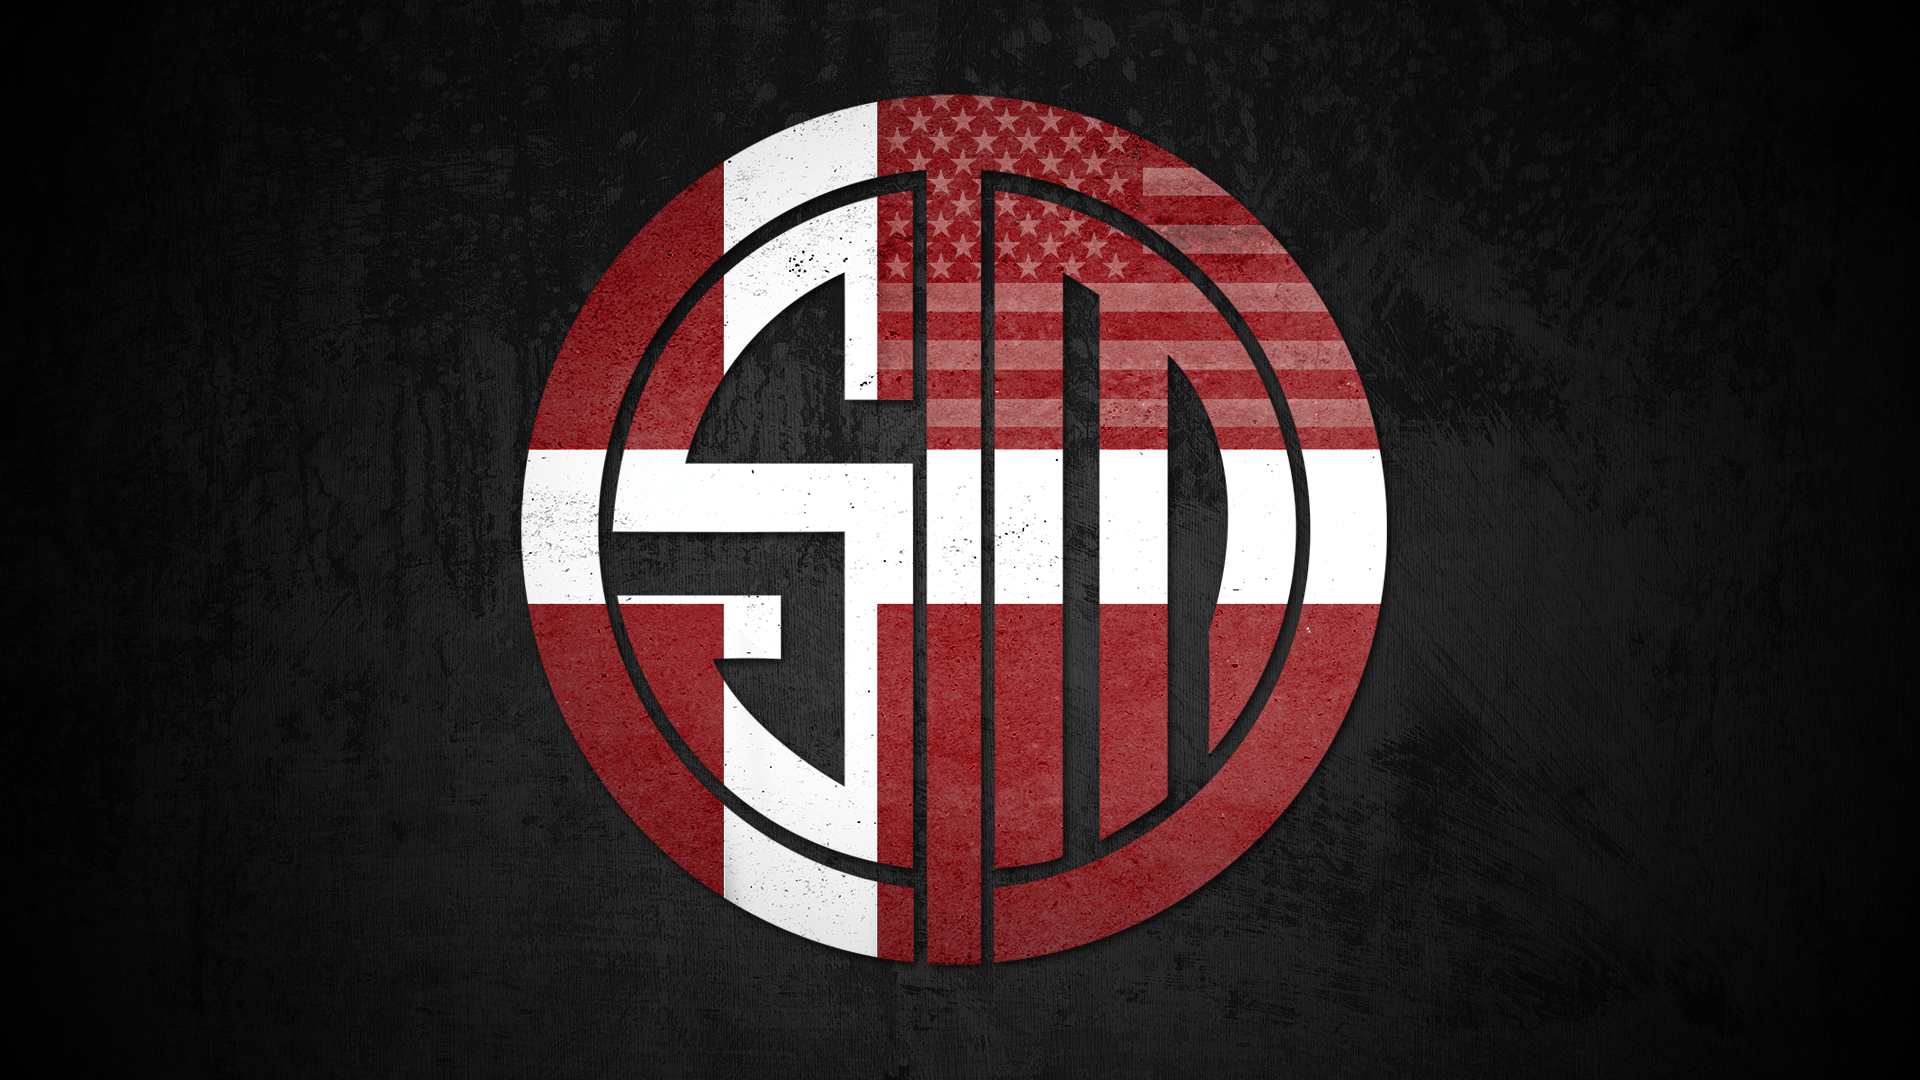 Red TSM Logo - I made a relevant TSM background